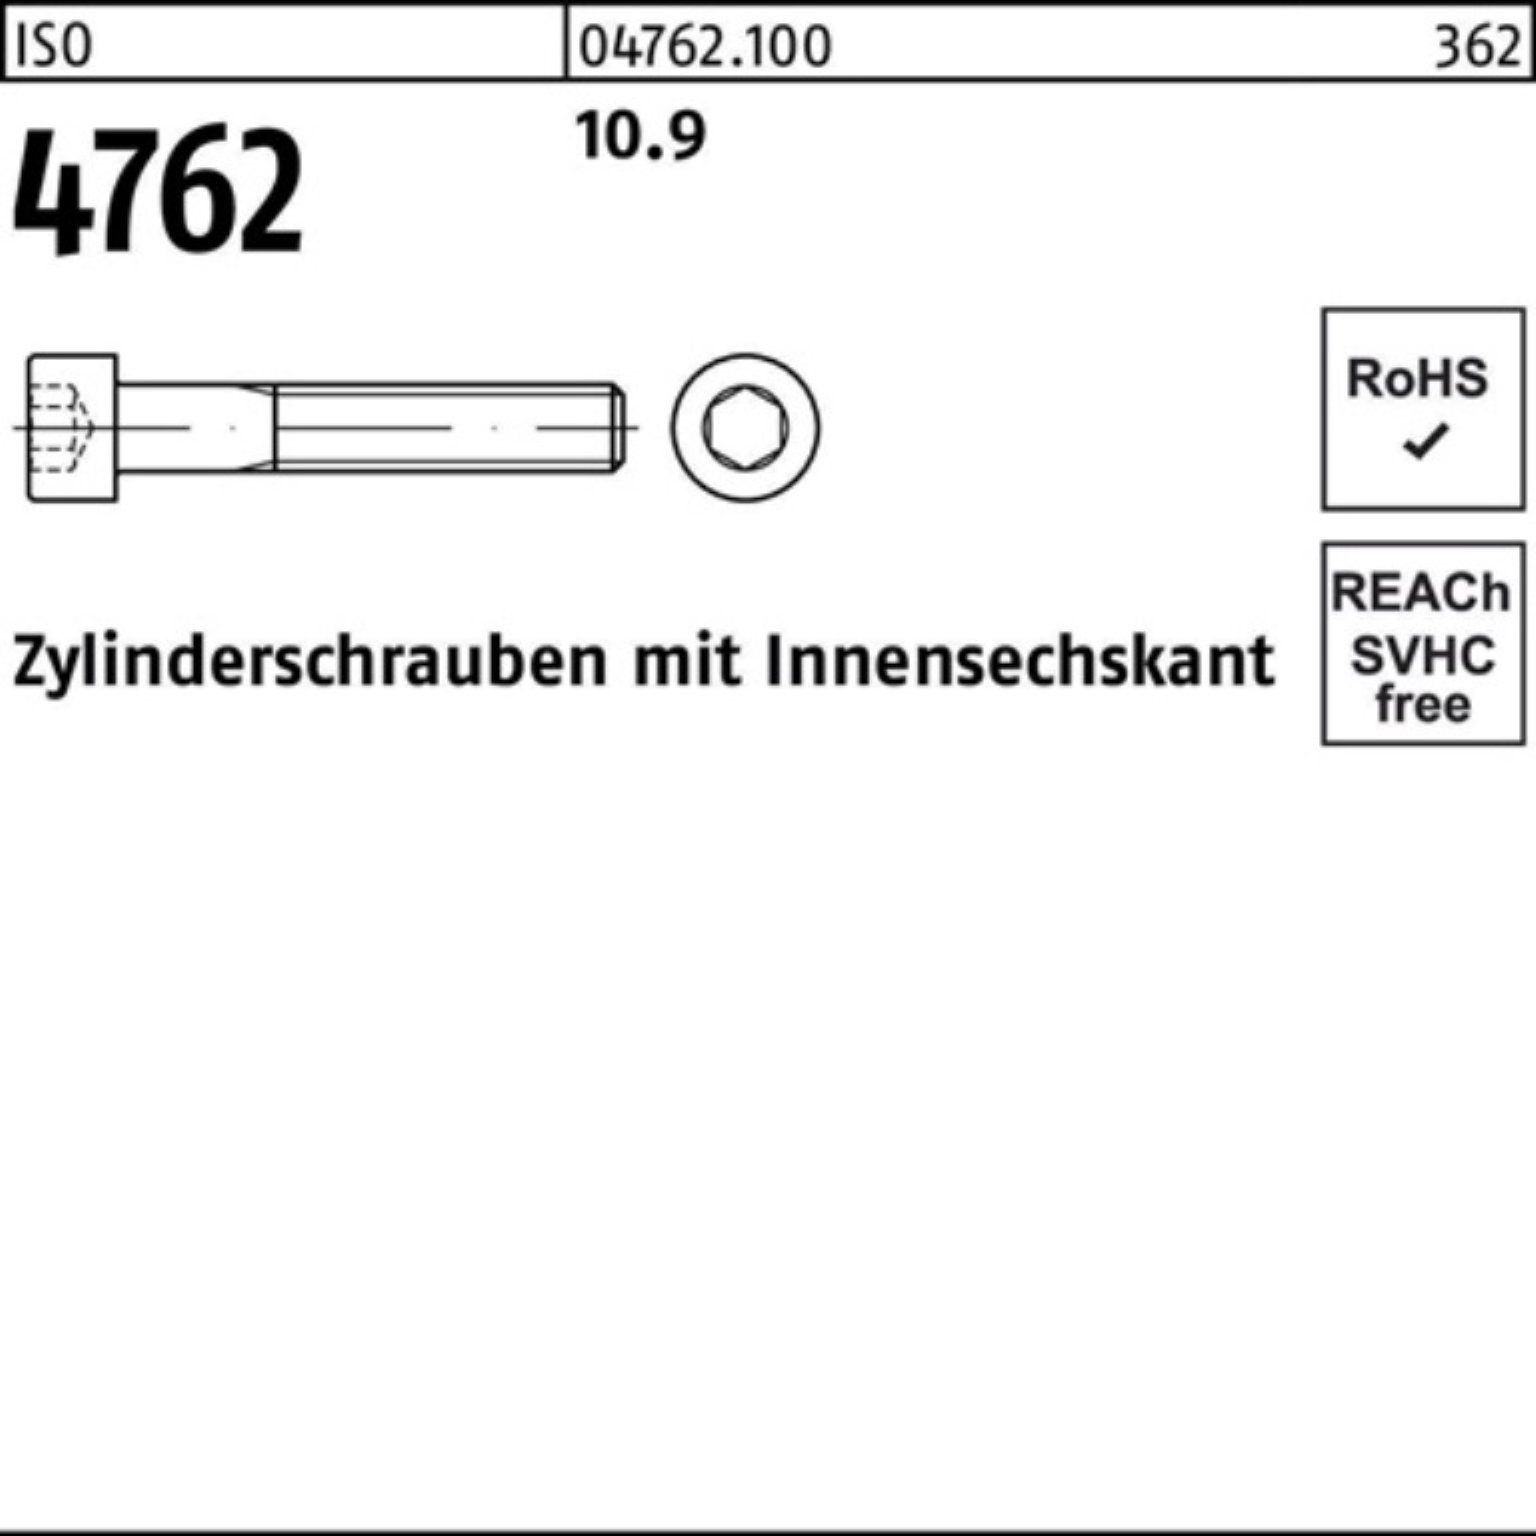 Pack M33x 4762 340 Zylinderschraube Reyher 1 10.9 Zylinderschraube 100er Innen-6kt Stück ISO